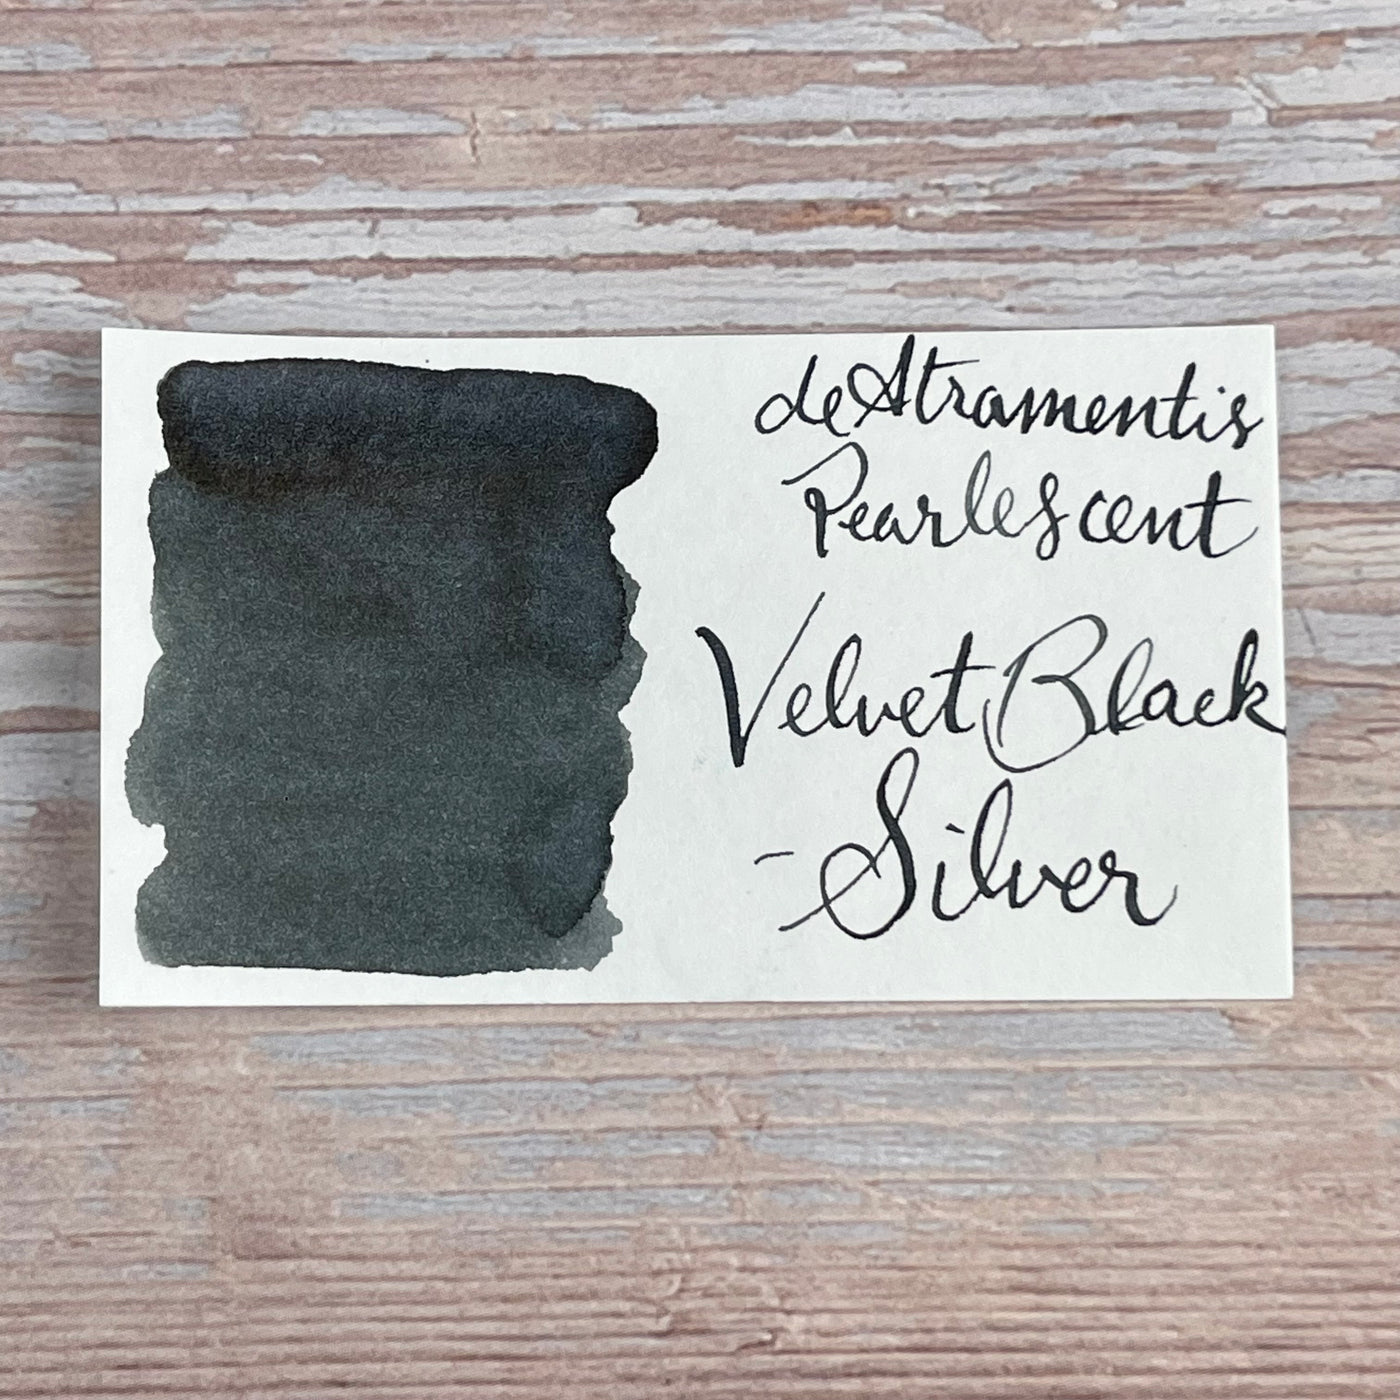 De Atramentis Pearlescent Velvet Black Silver - 45ml Bottled ink